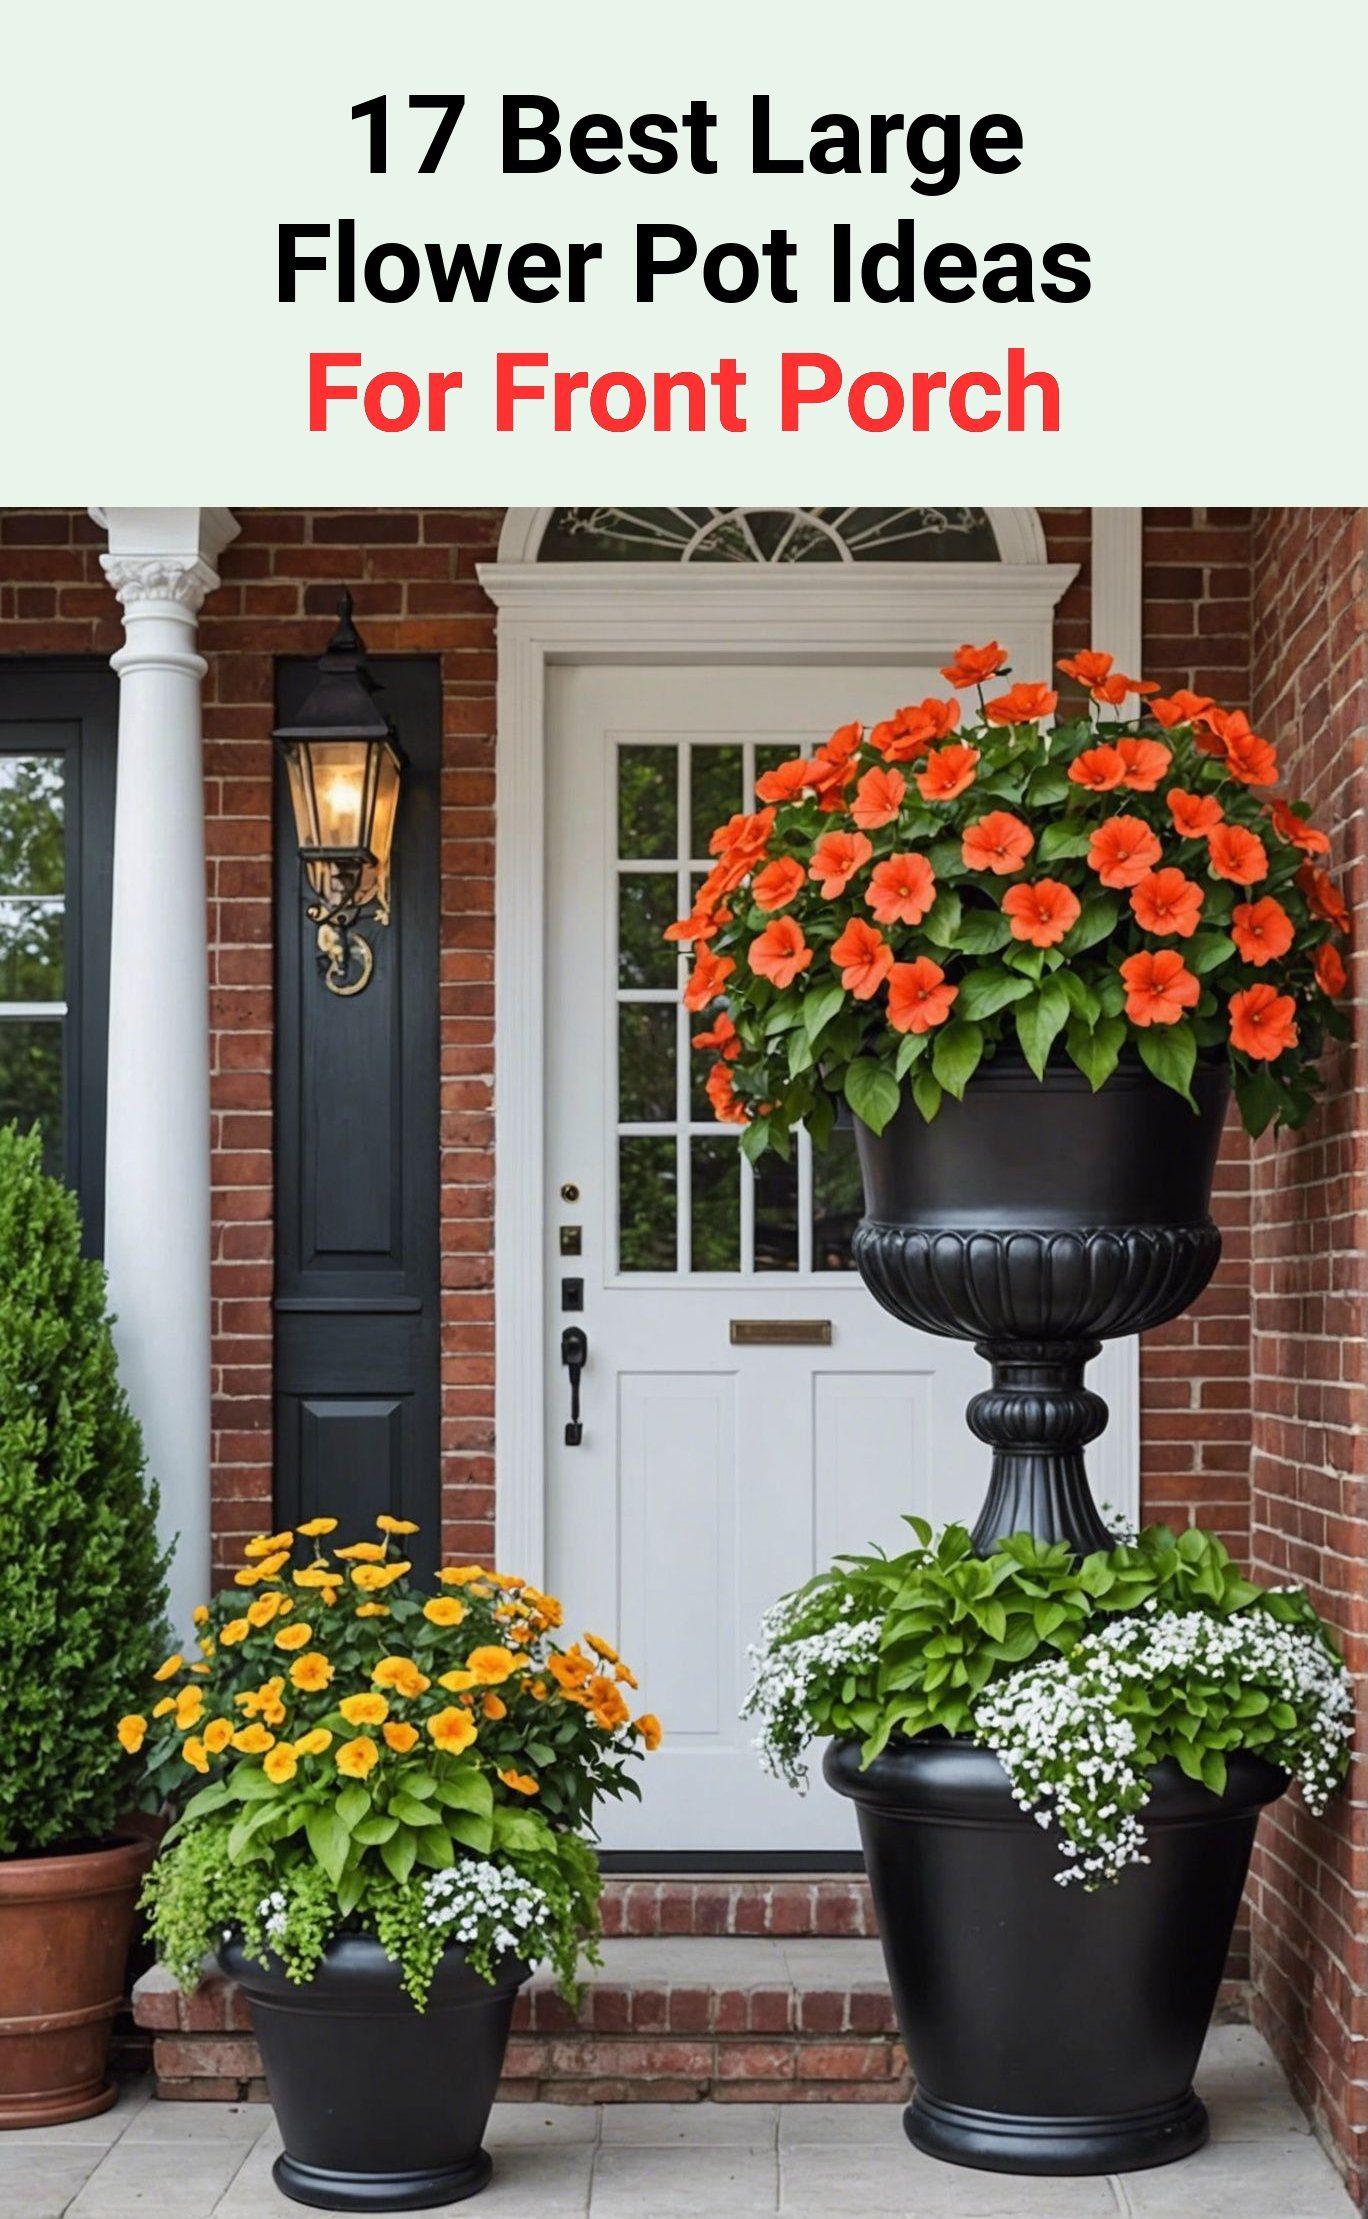 17 Best Large Flower Pot Ideas For Front Porch